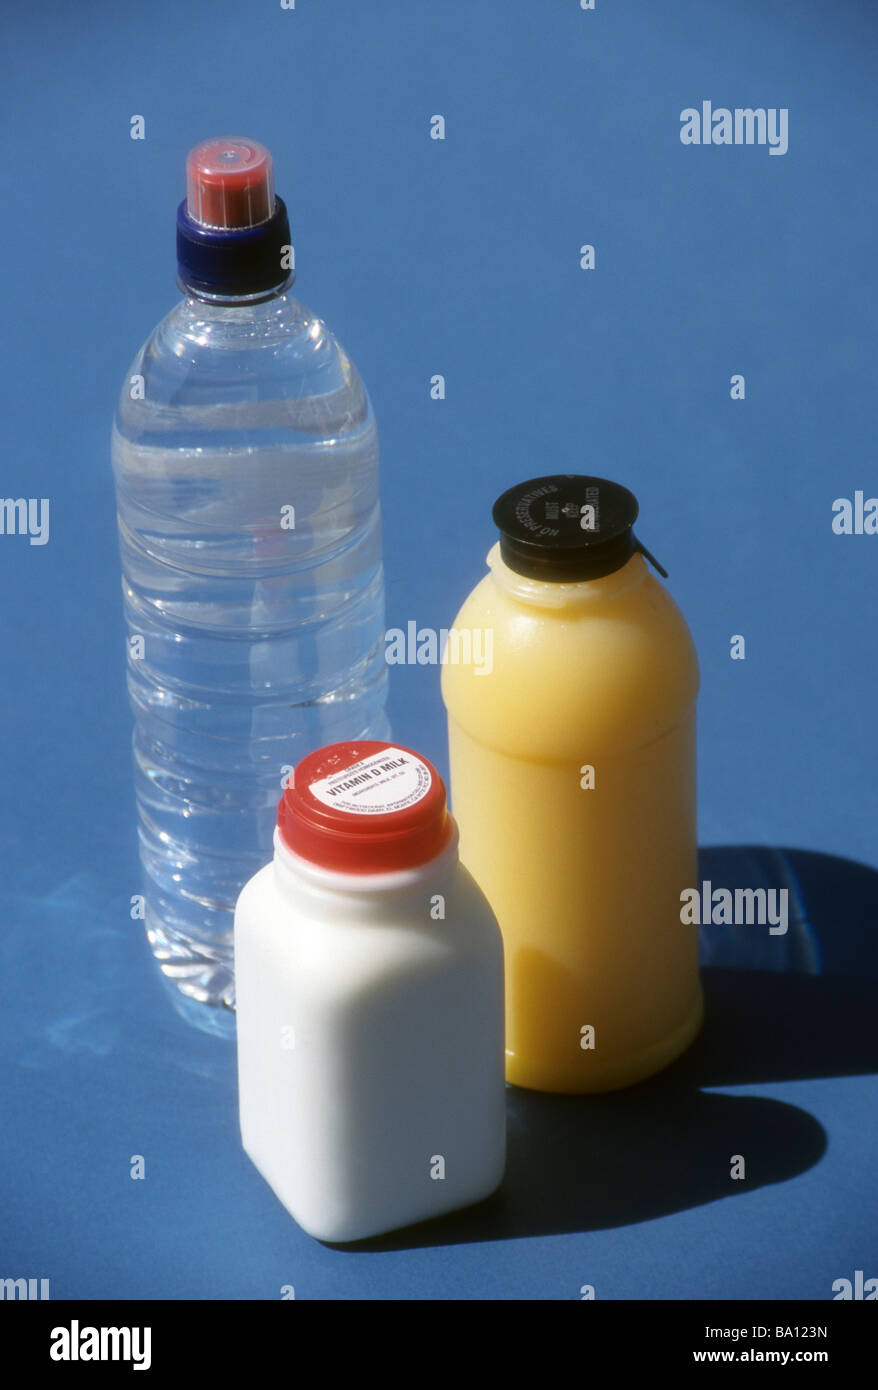 Contenitore in plastica acqua in bottiglia di succo di arancia bevanda di  latte da bere vay varie dimensioni chiara freddo smerigliato guarnizione  tappo di sicurezza alimentare per la salute Foto stock -